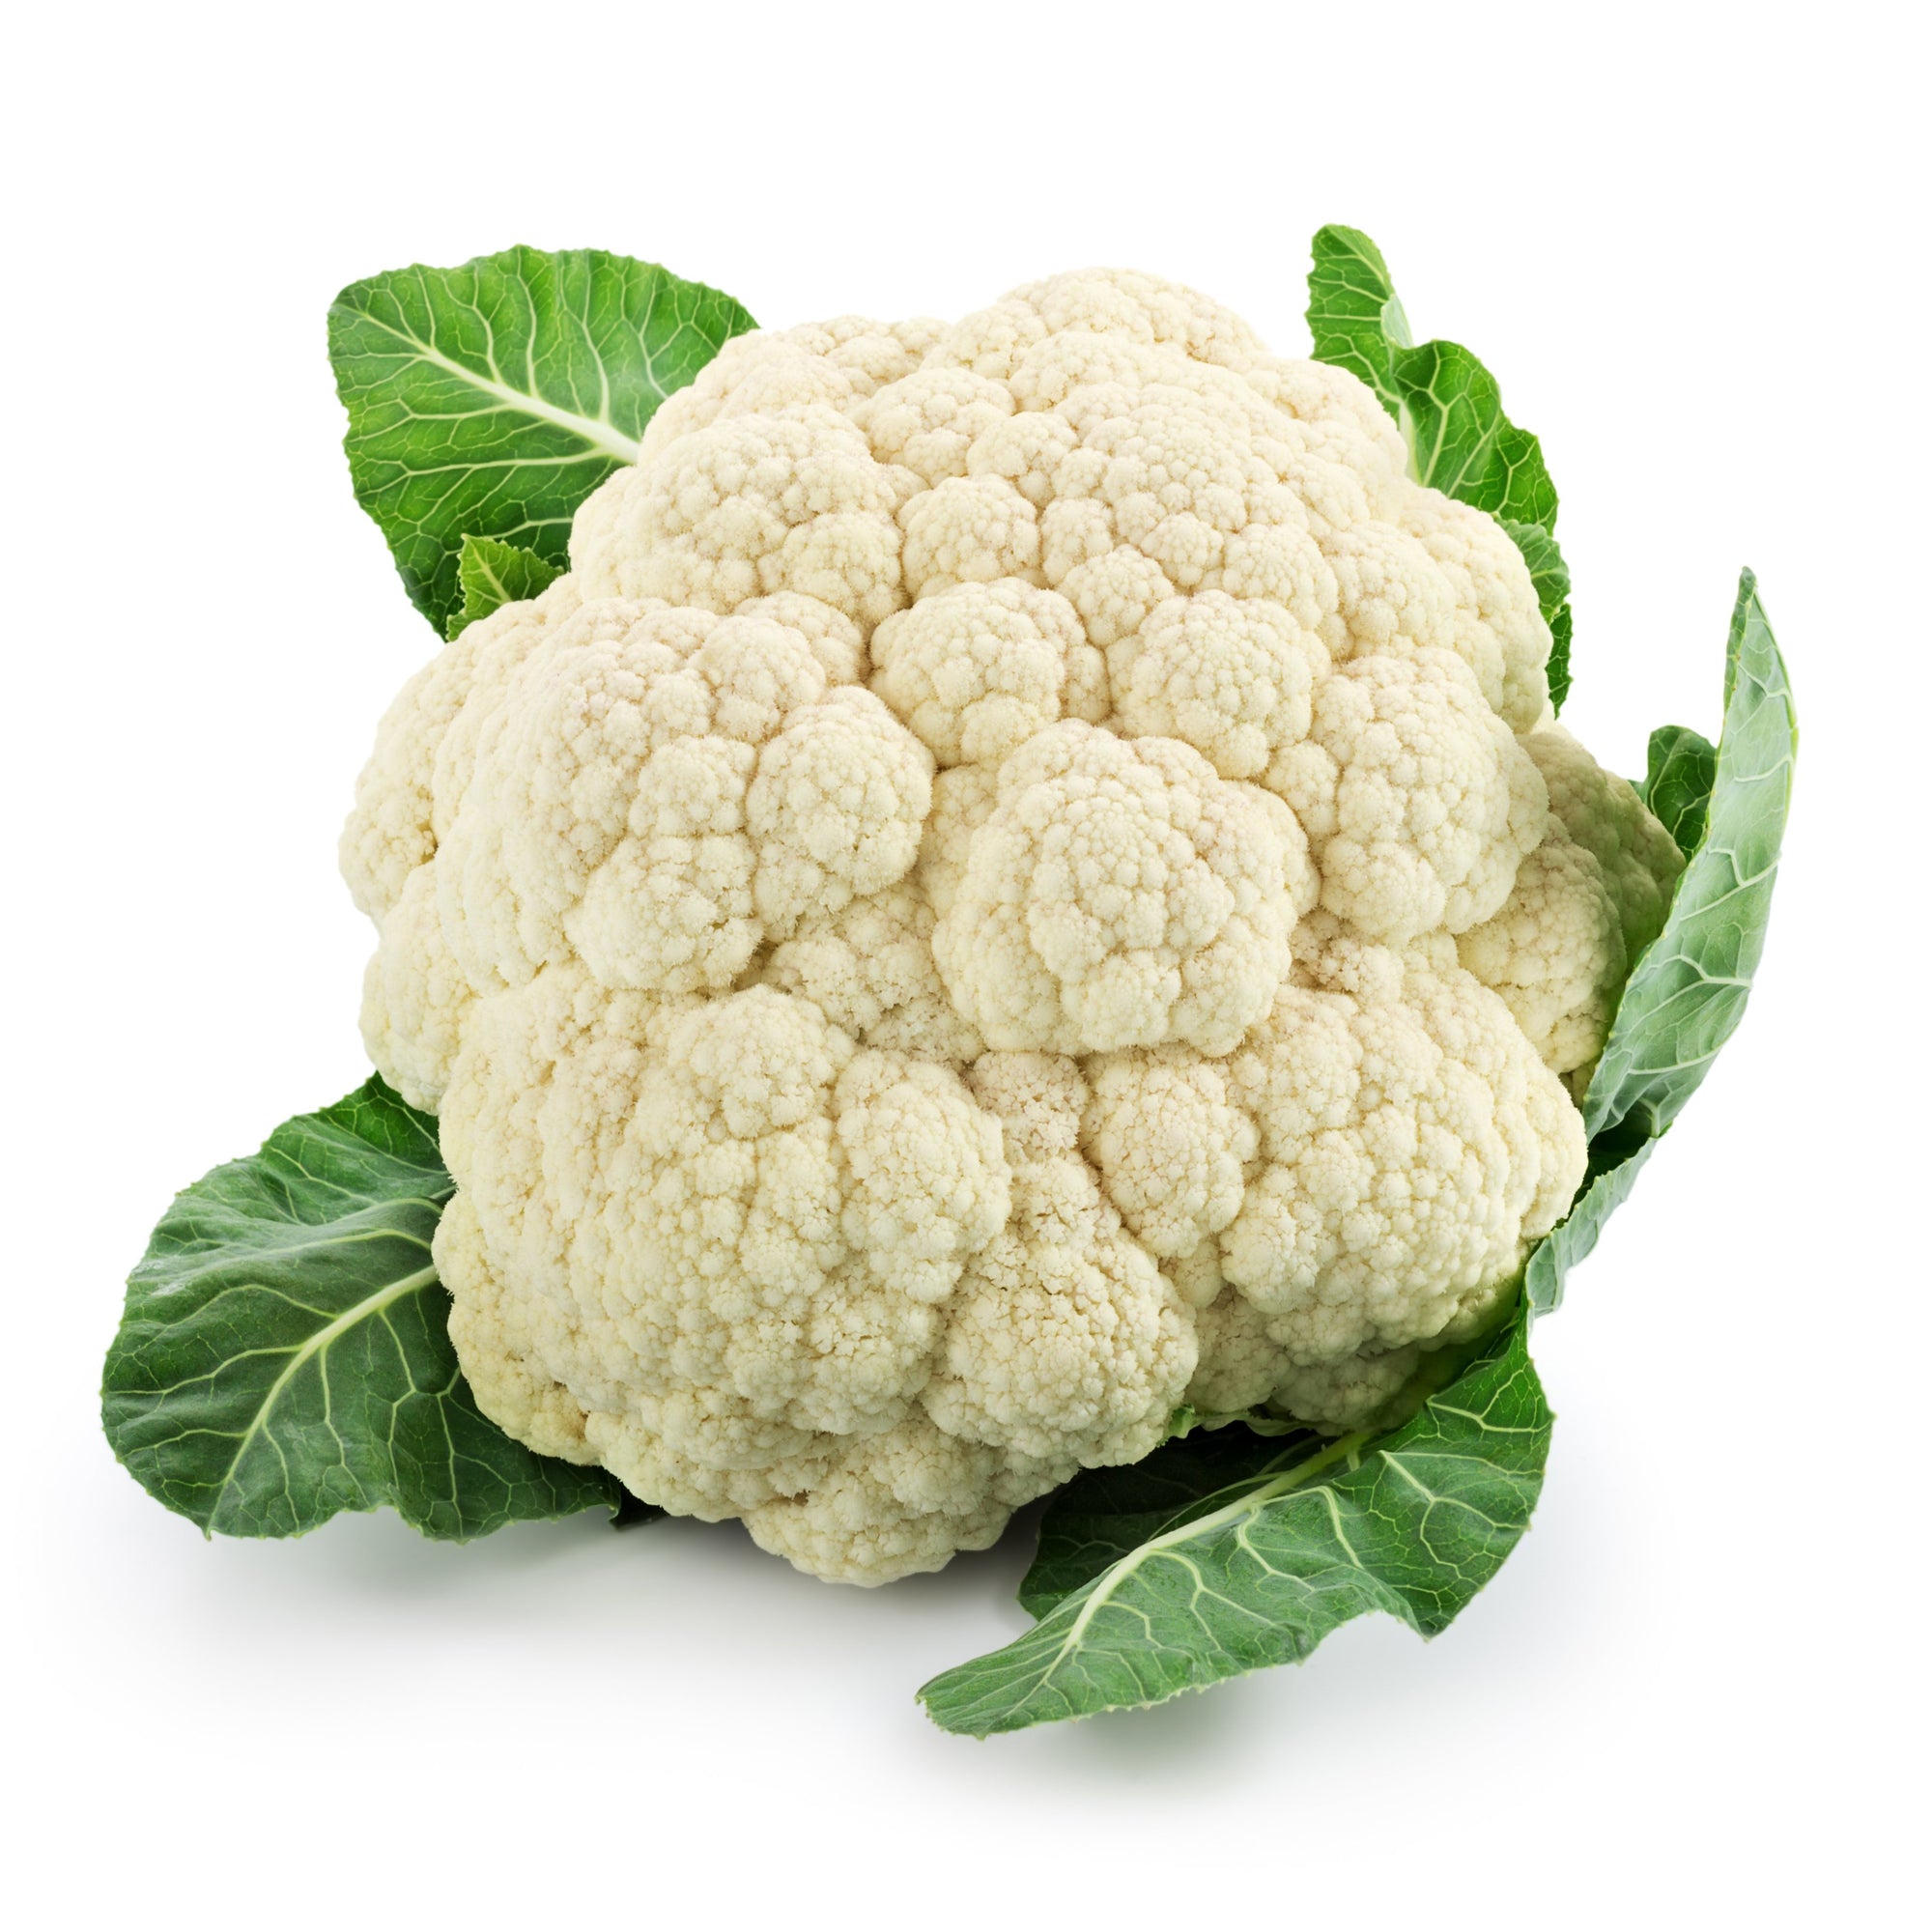 Cauliflower - Each